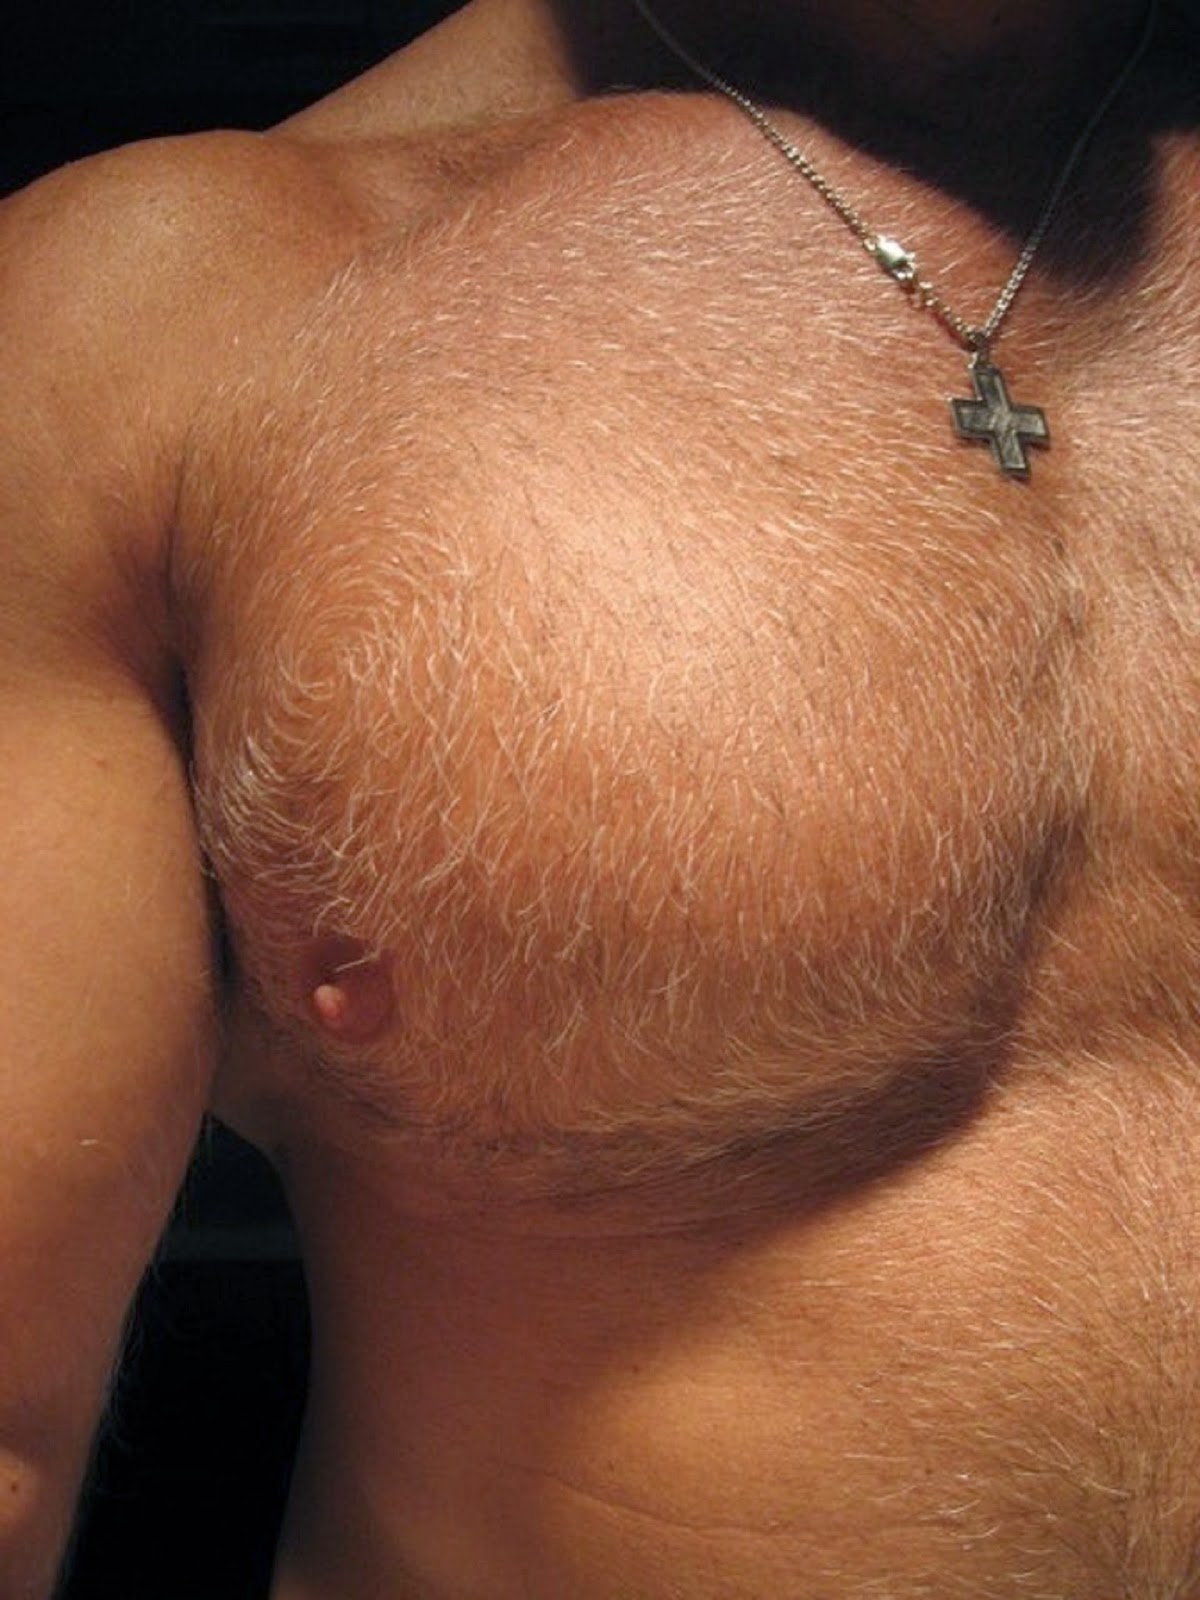 мужская грудь с сосками фото 83